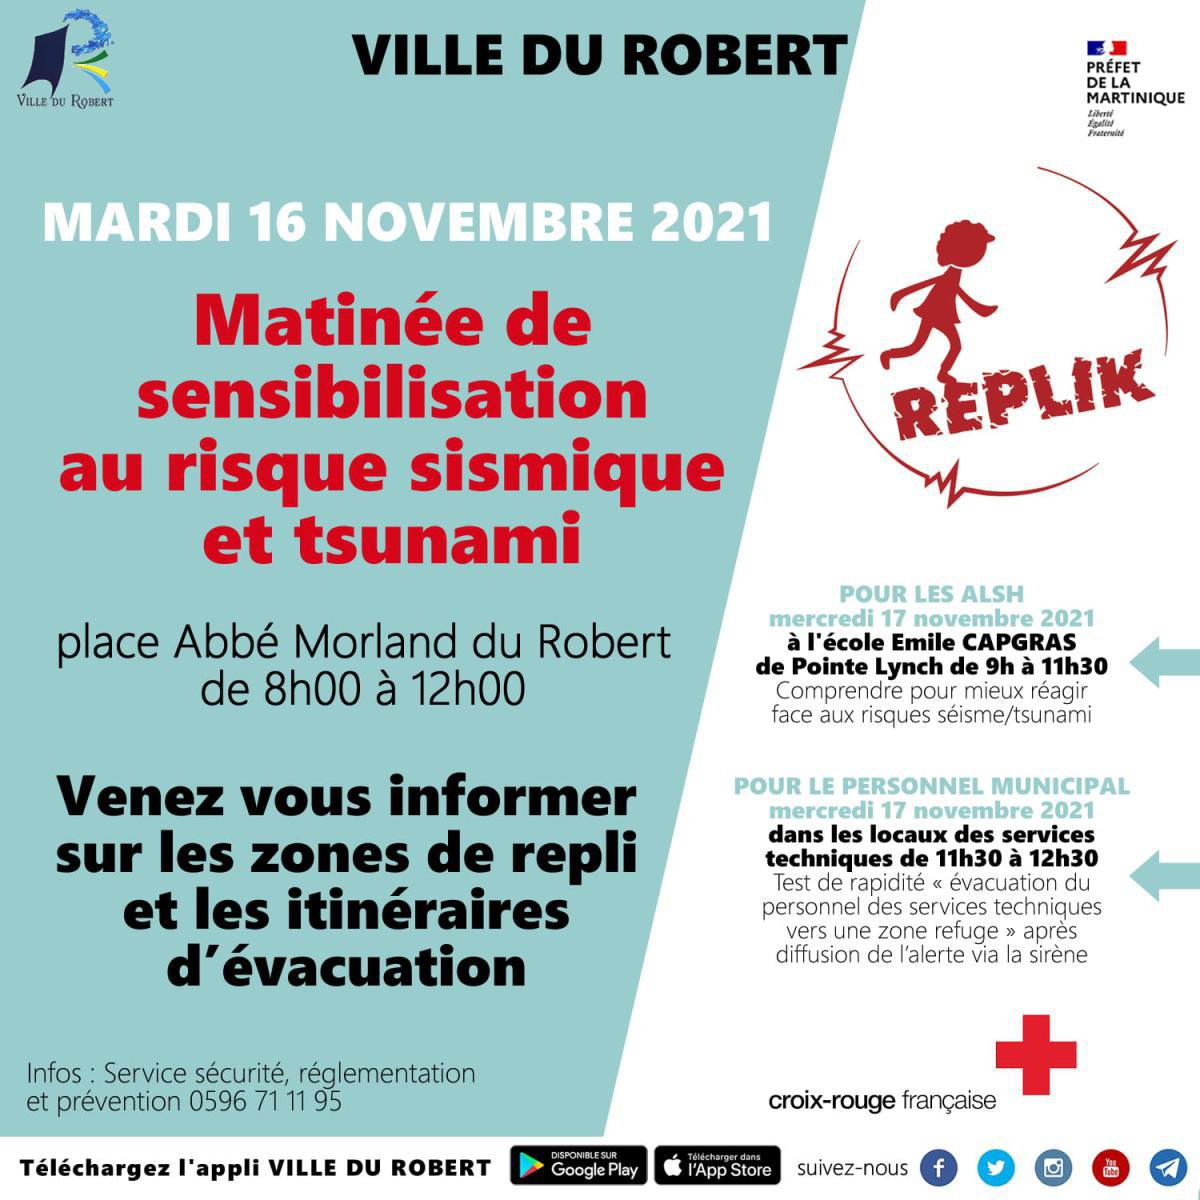 MARDI 16 NOVEMBRE 2021 : MATINÉE DE SENSIBILISATION AUX RISQUES MAJEURS 